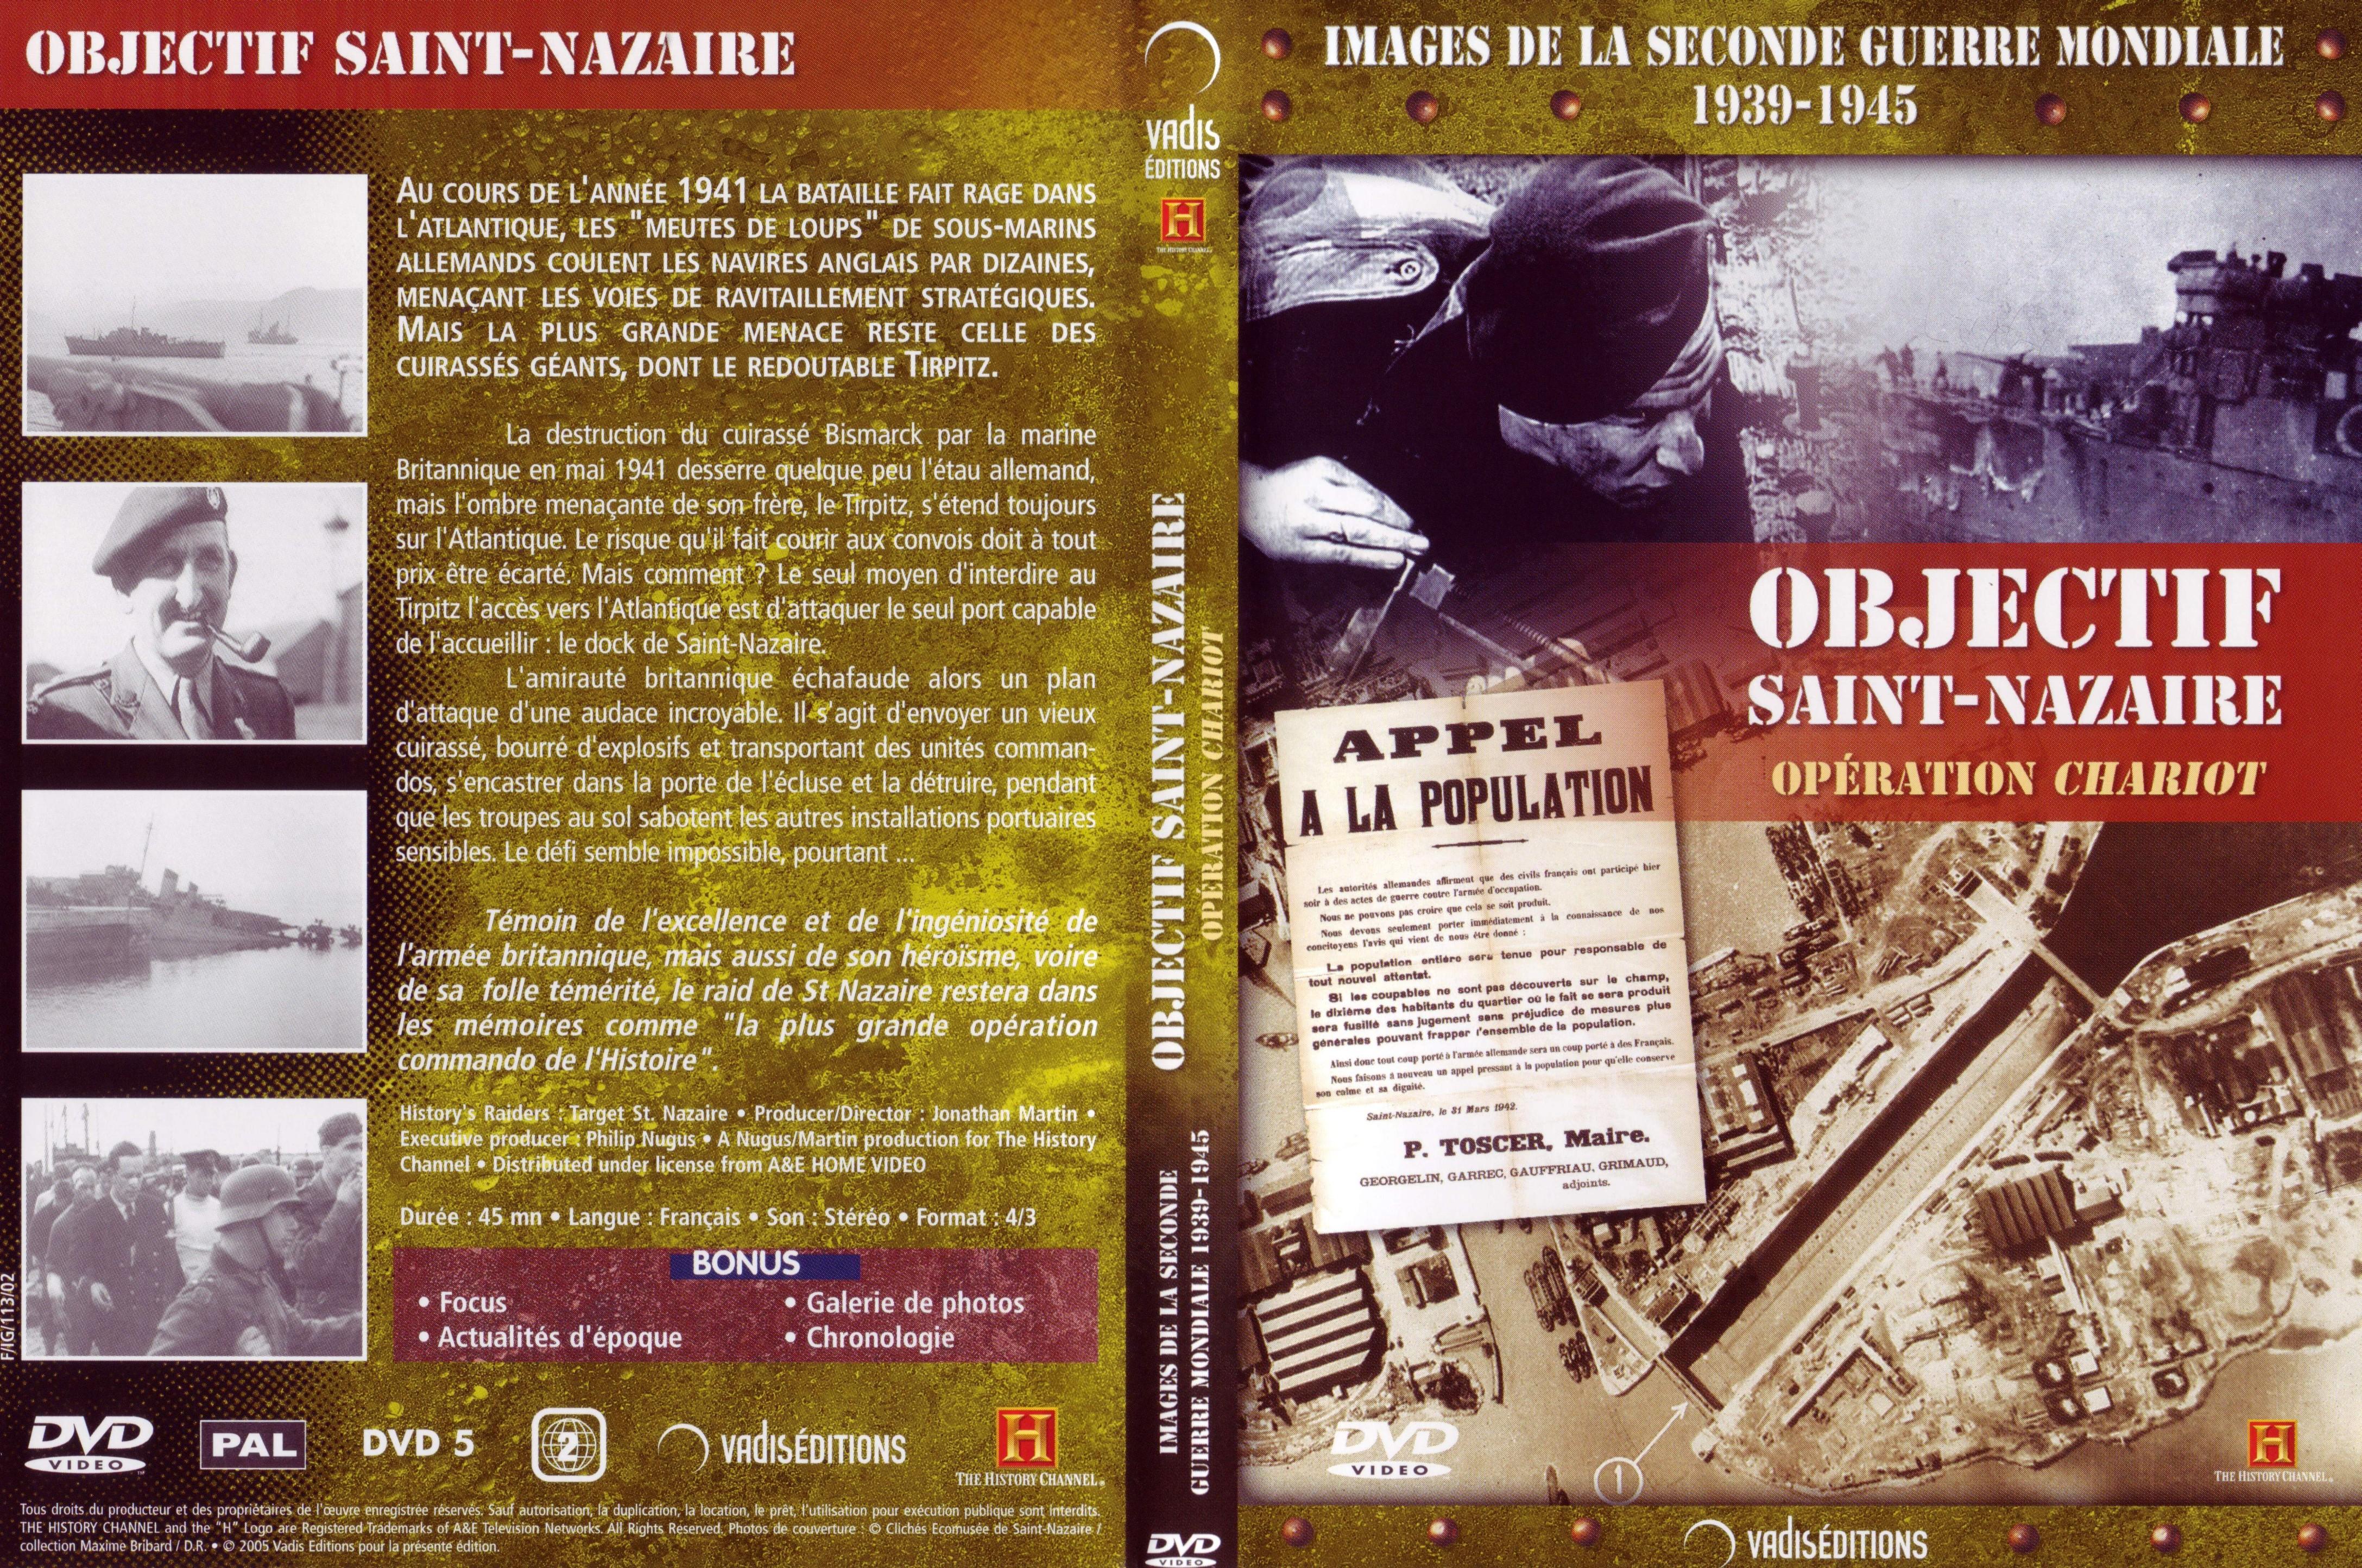 Jaquette DVD Images de la seconde guerre mondiale - Objectif Saint-Nazaire